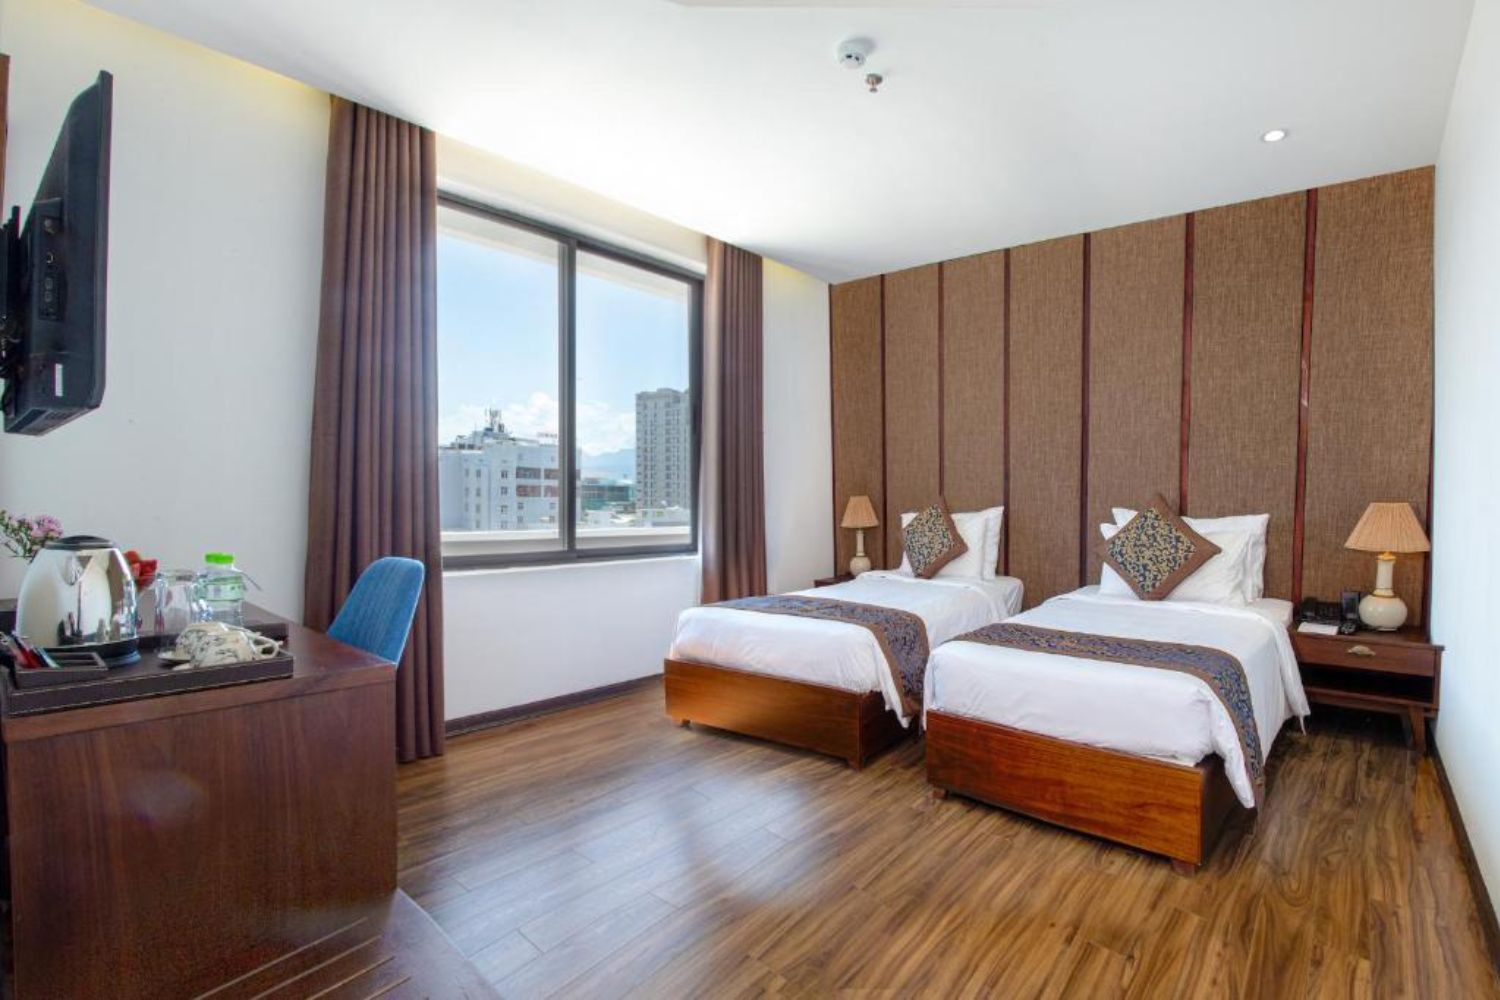 Dong Duong Hotel and Suites thiết kế theo lối kiến trúc sang trọng và trang nhã 7